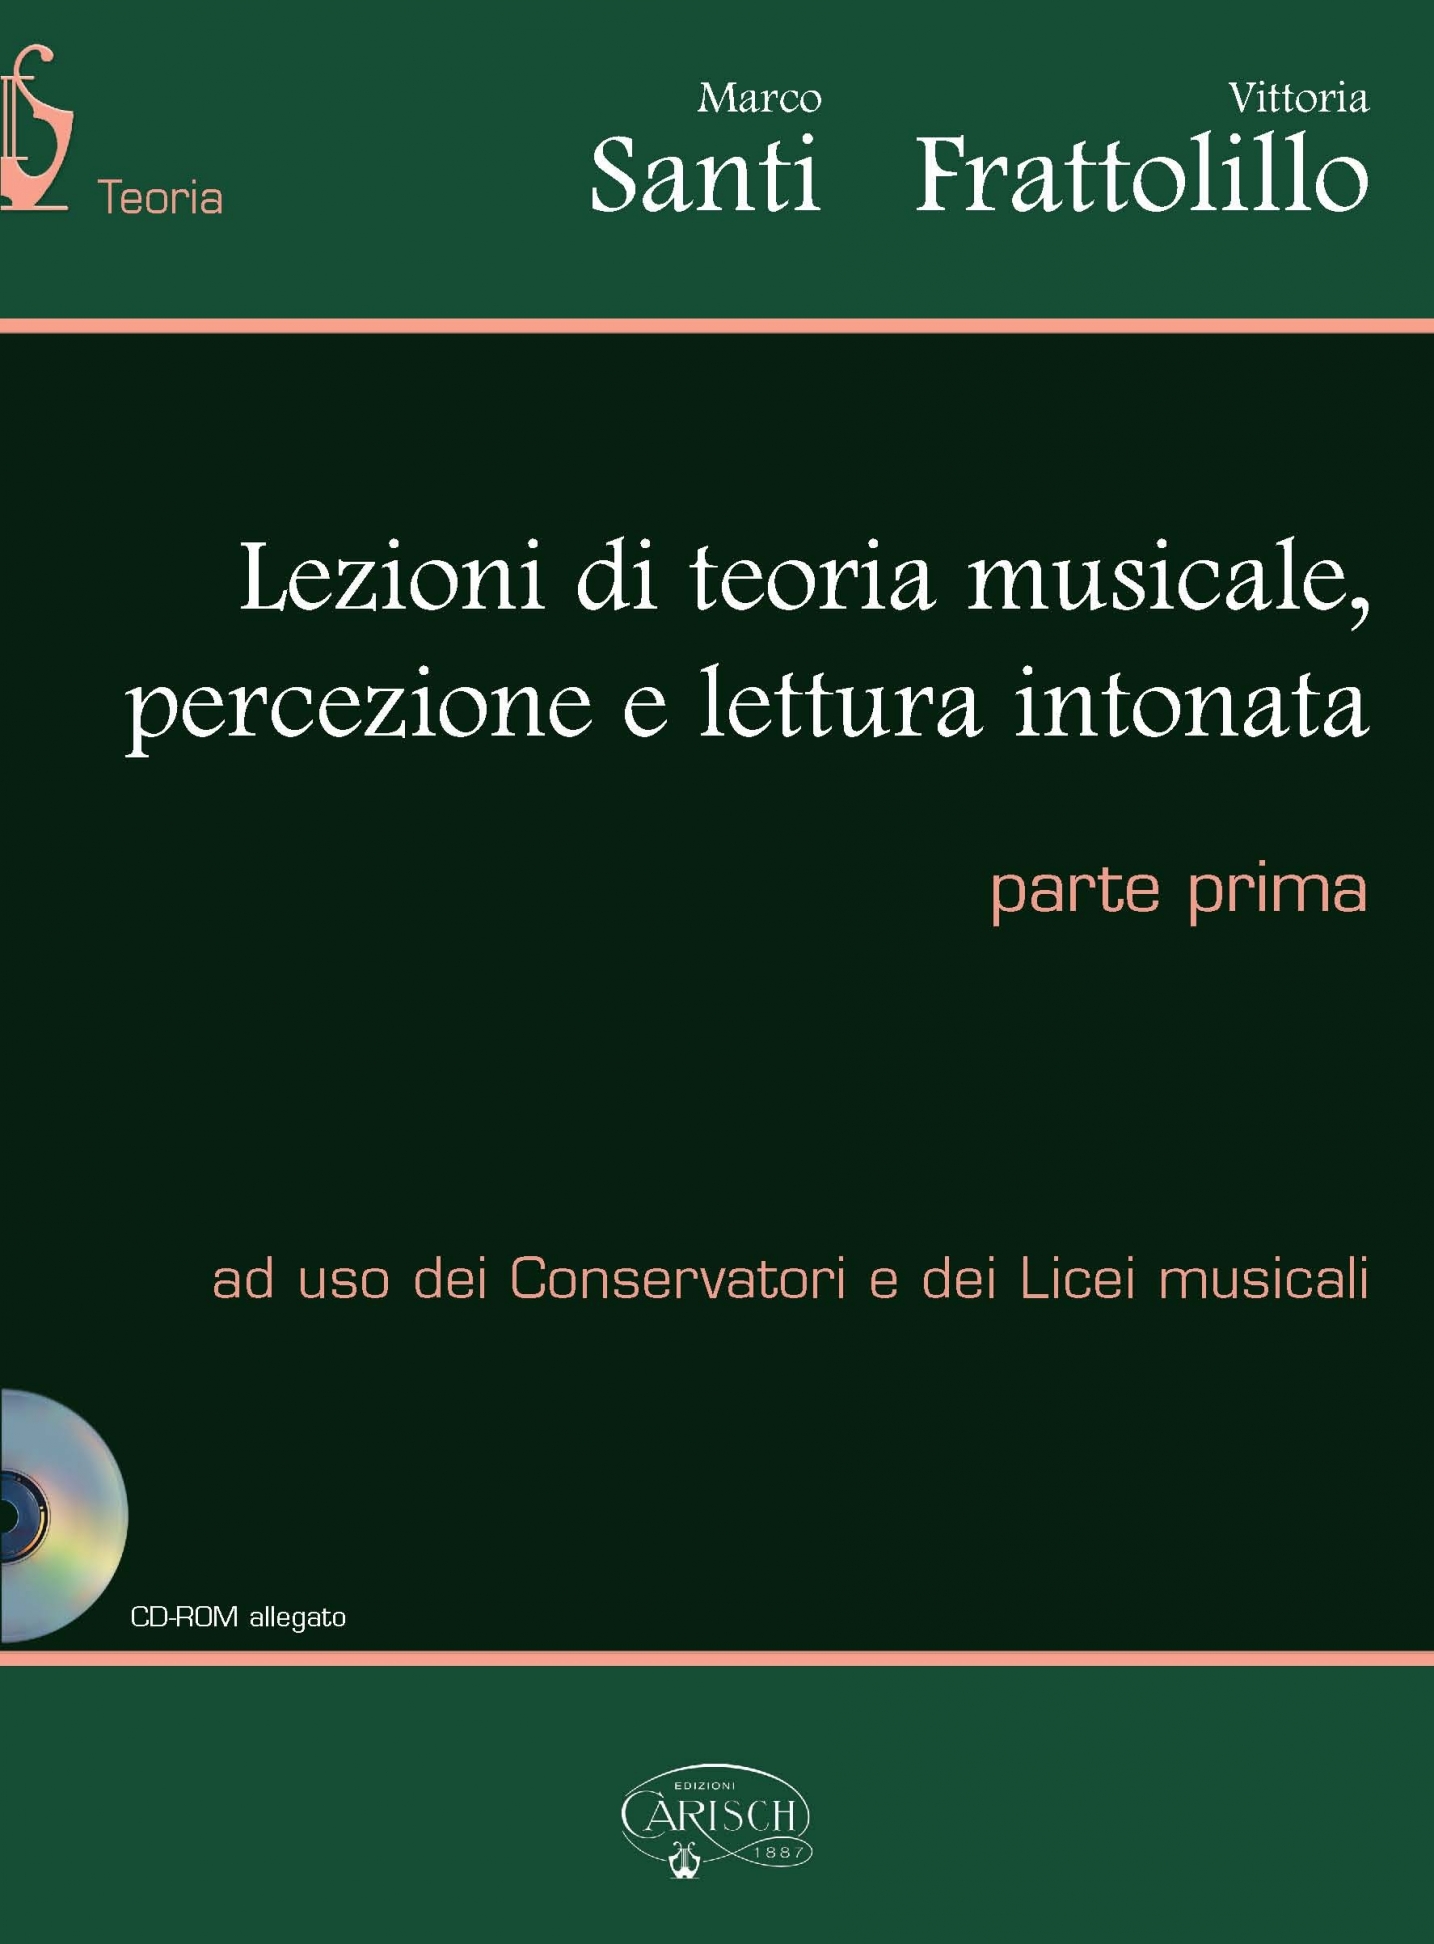 Marco Santi Vittoria Frattolillo: Lezioni Di Teoria Musicale Vol. 1: